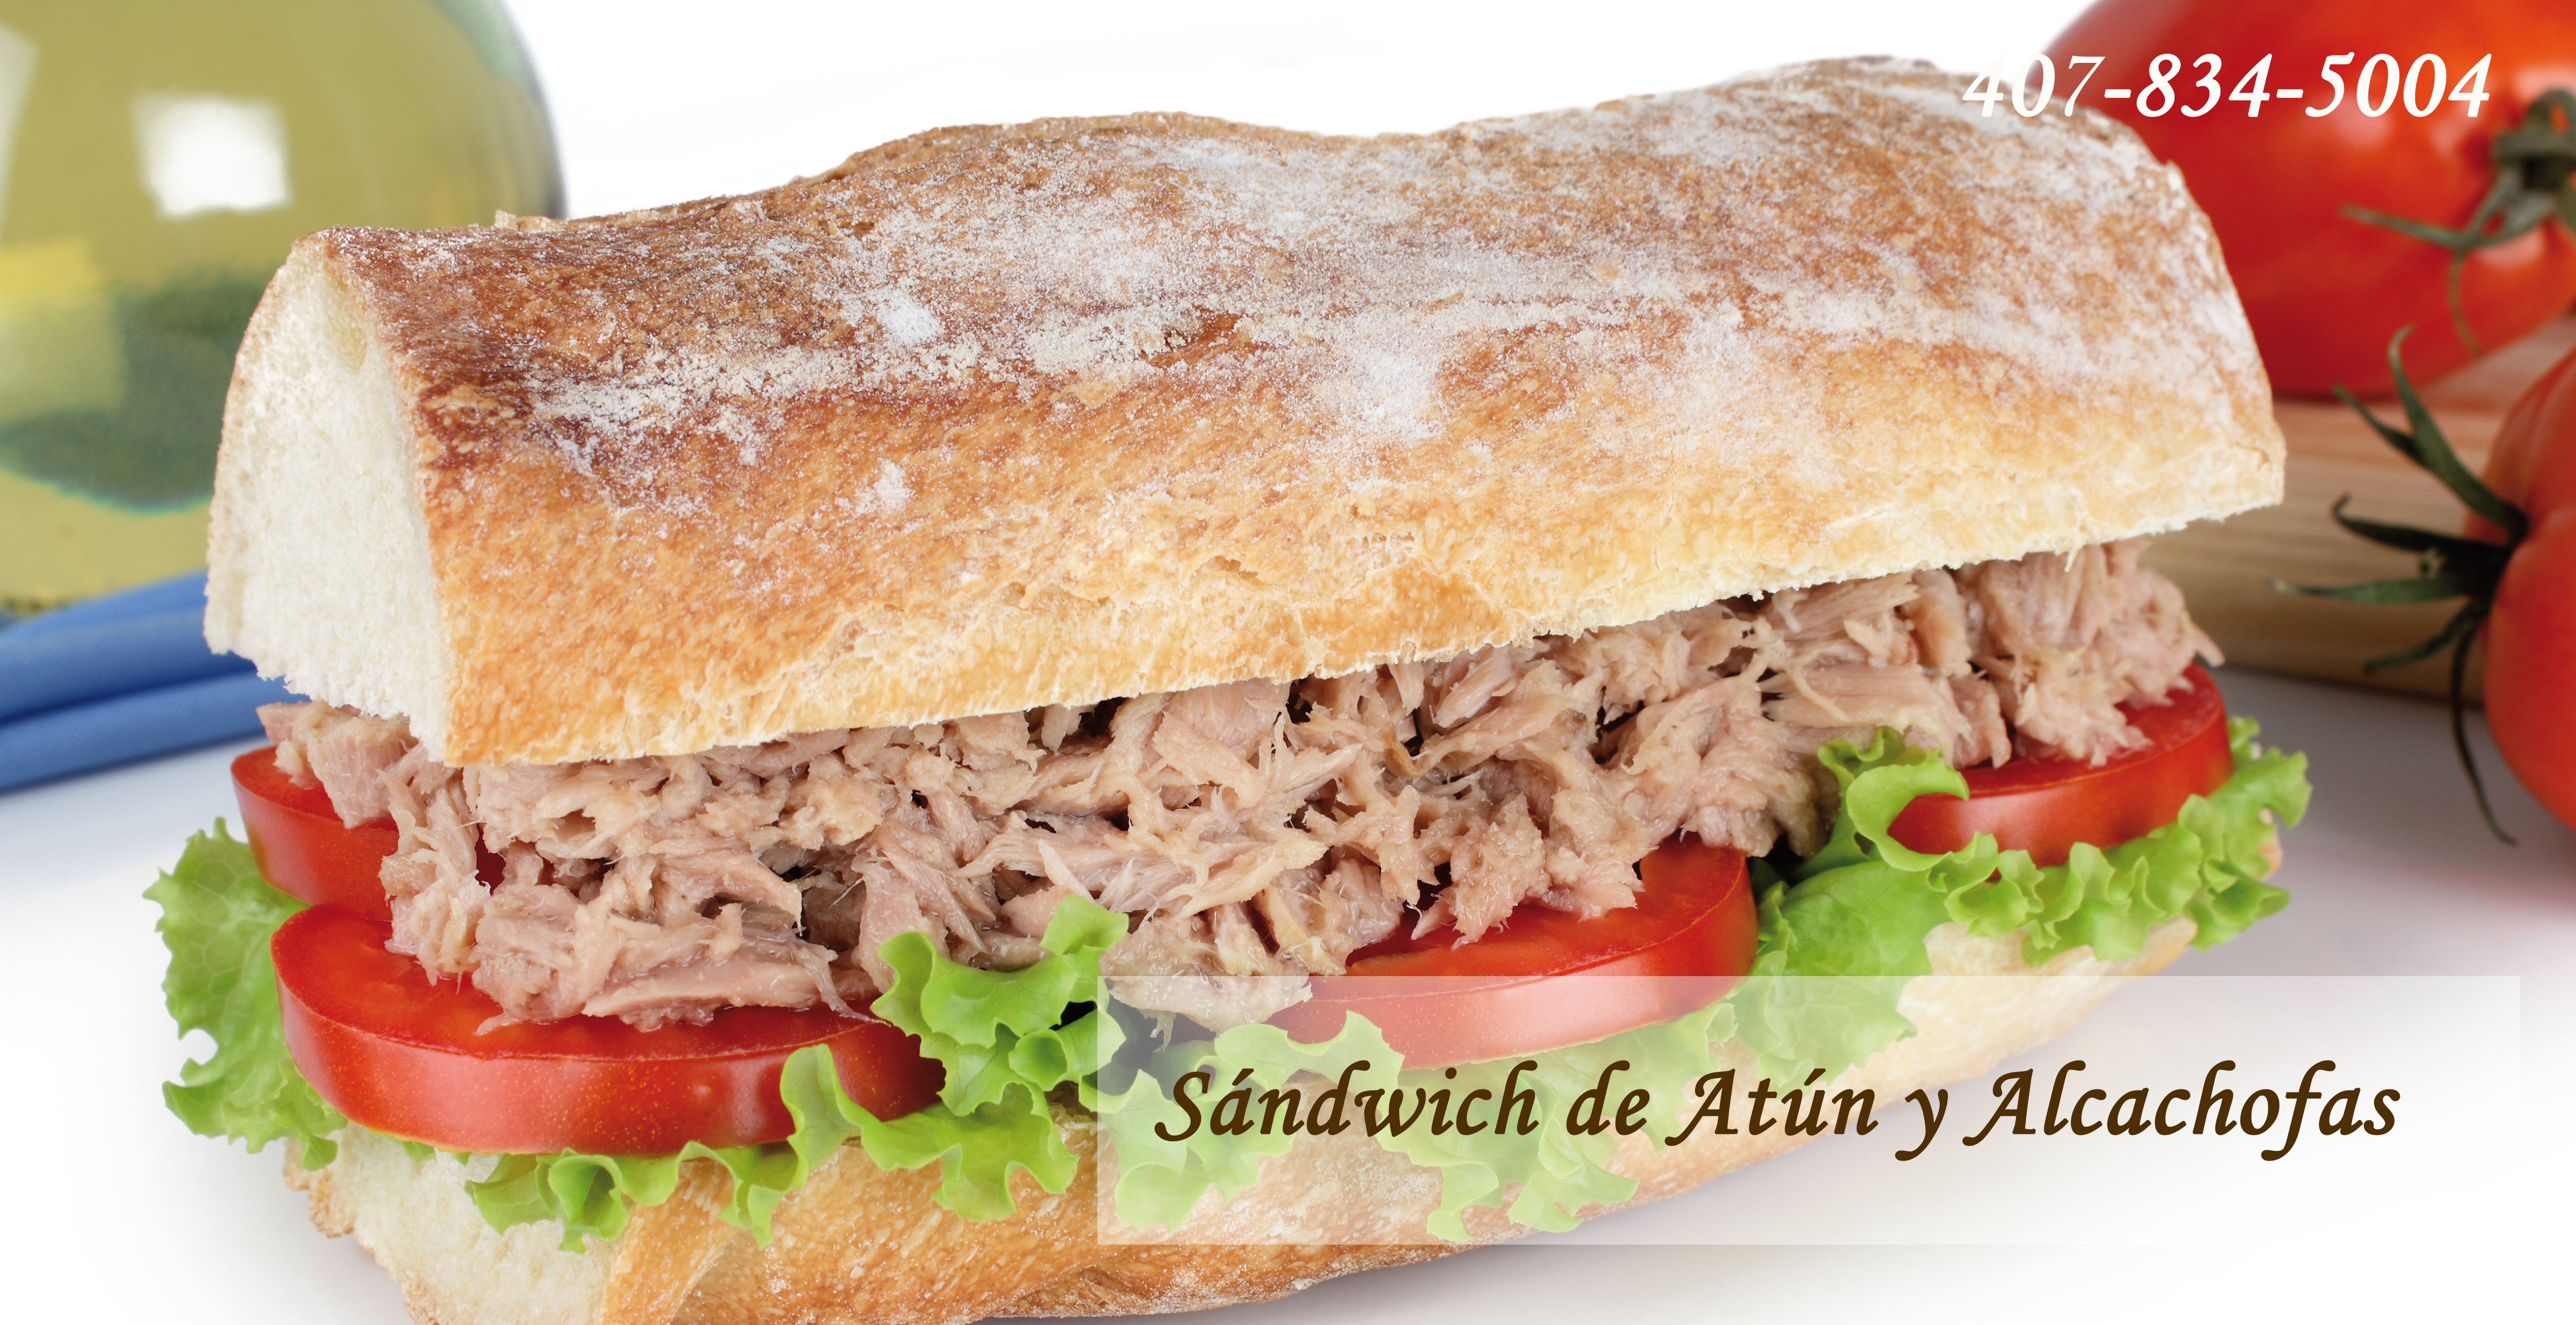 06 Sándwich de Atún y Alcachofas